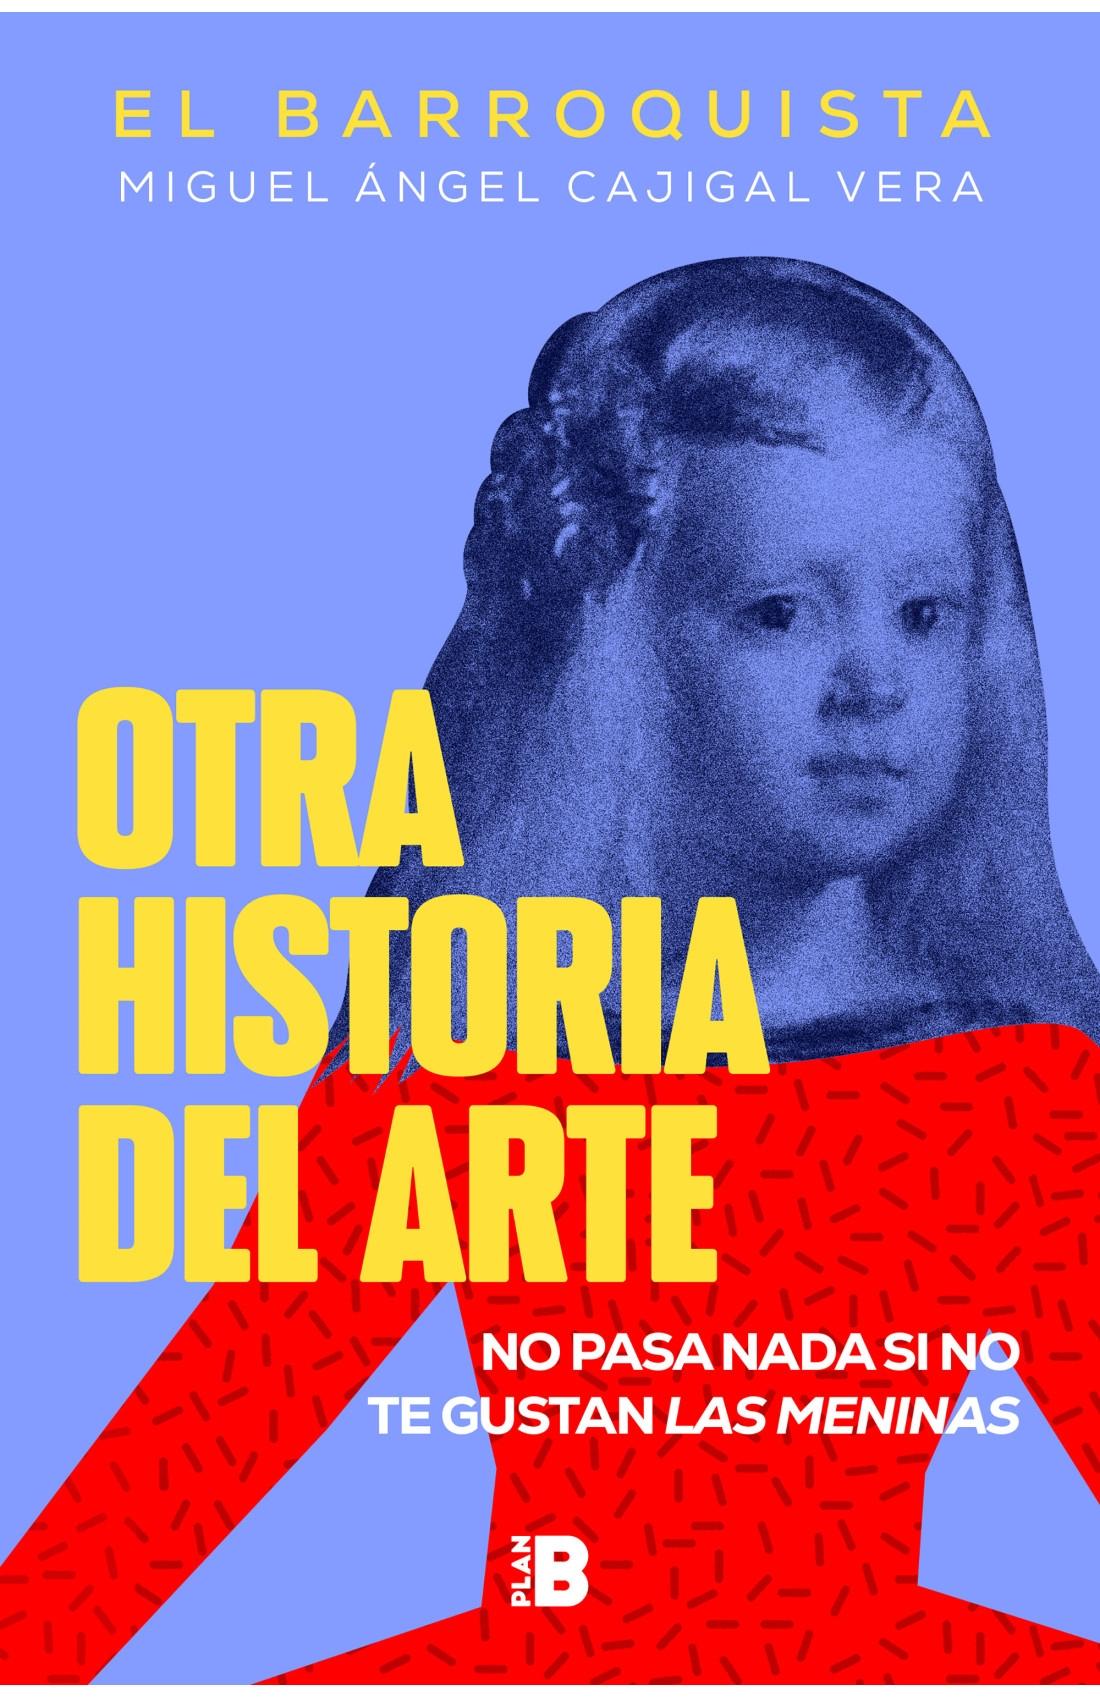 OTRA HISTORIA DEL ARTE "NO PASA NADA SI NO TE GUSTAN LAS MENINAS". 